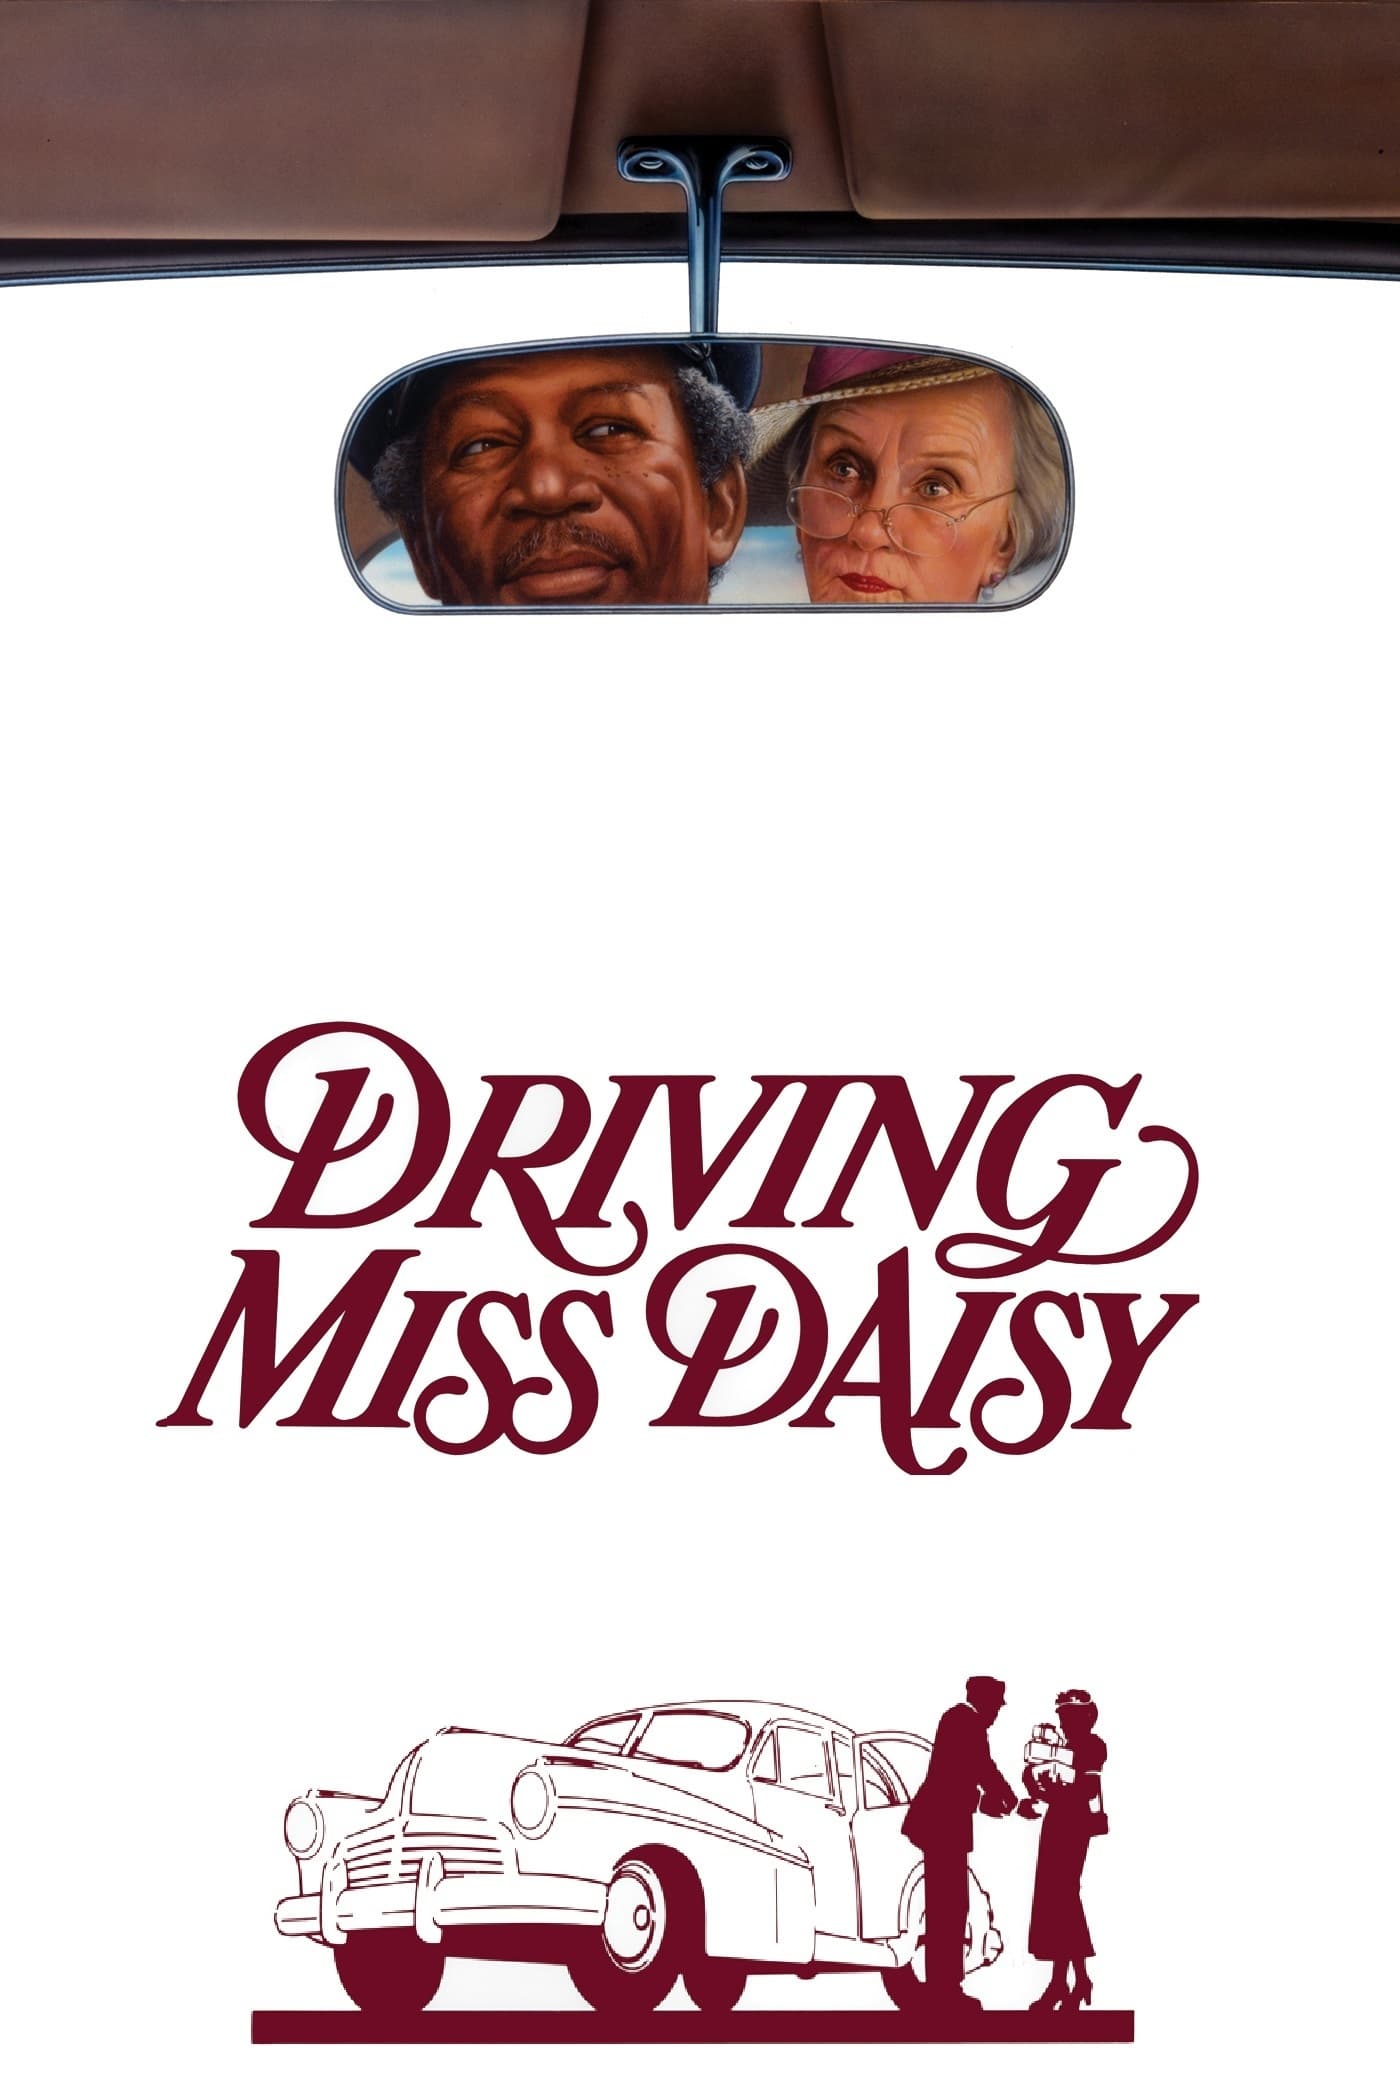 Caratula de DRIVING MISS DAISY (Paseando a miss daisy) 